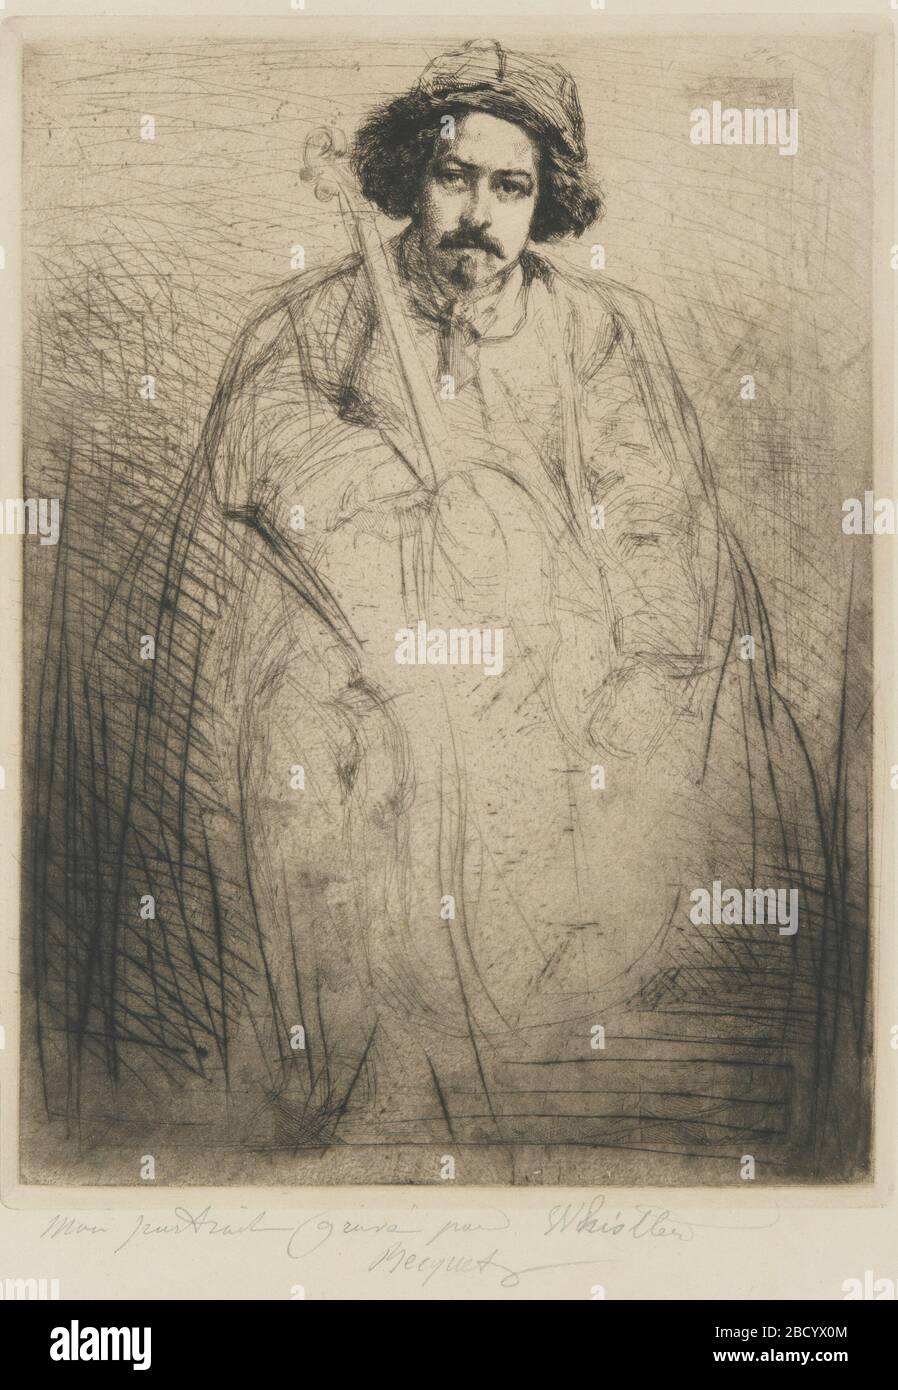 (Künstler) James McNeill Whistler; Vereinigte Staaten; 1859; Radierung und Trockenpunkt auf Papier; H x B: 25,5 x 19,3 cm (10 1/16 x 7 5/8 in); Geschenk von Charles lang Freer J Becquet Sculptor Stockfoto